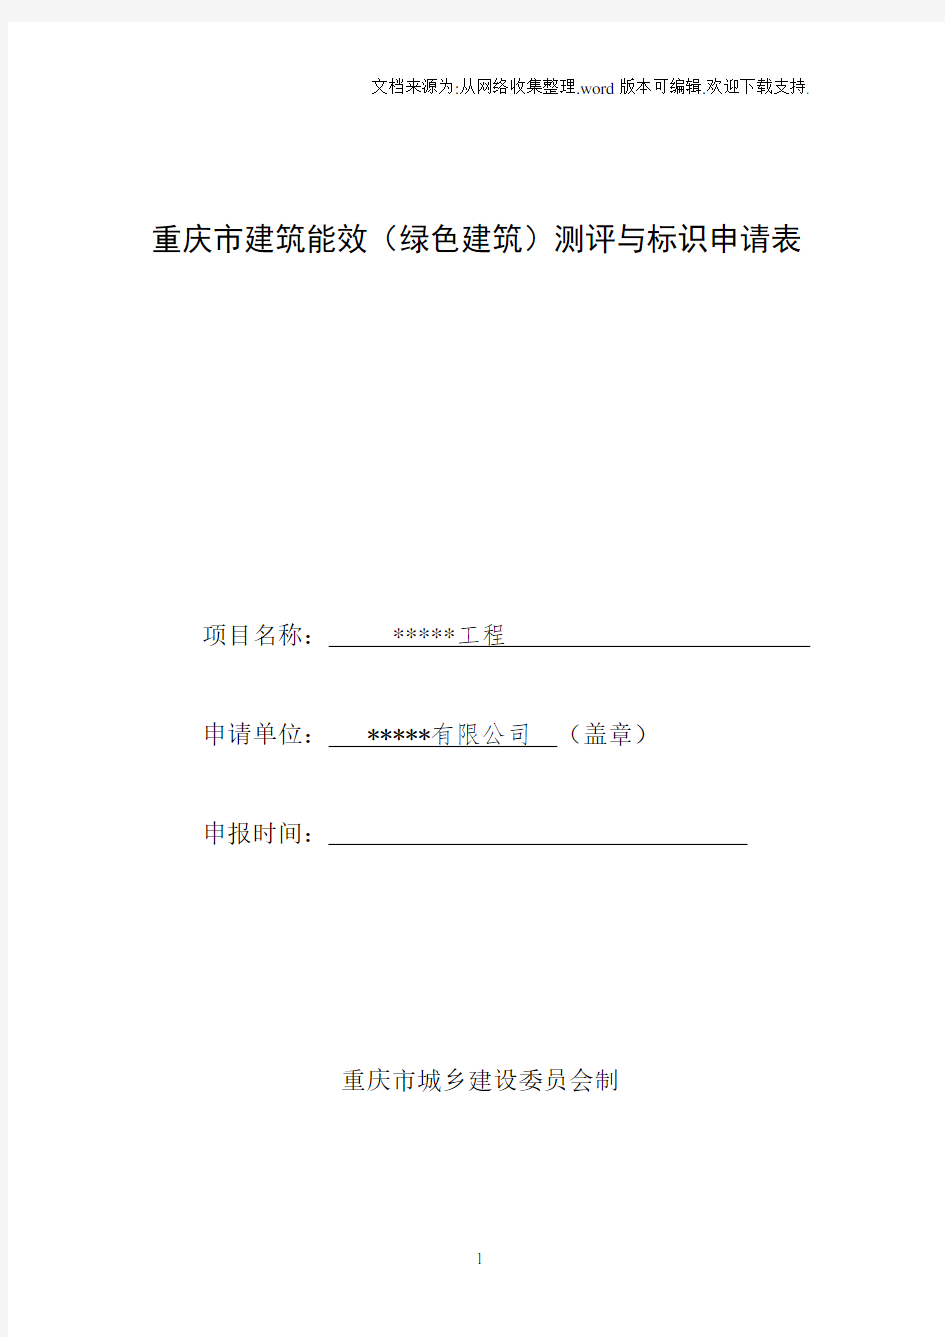 重庆市建筑能效(绿色建筑)测评与标识申请表填写范例